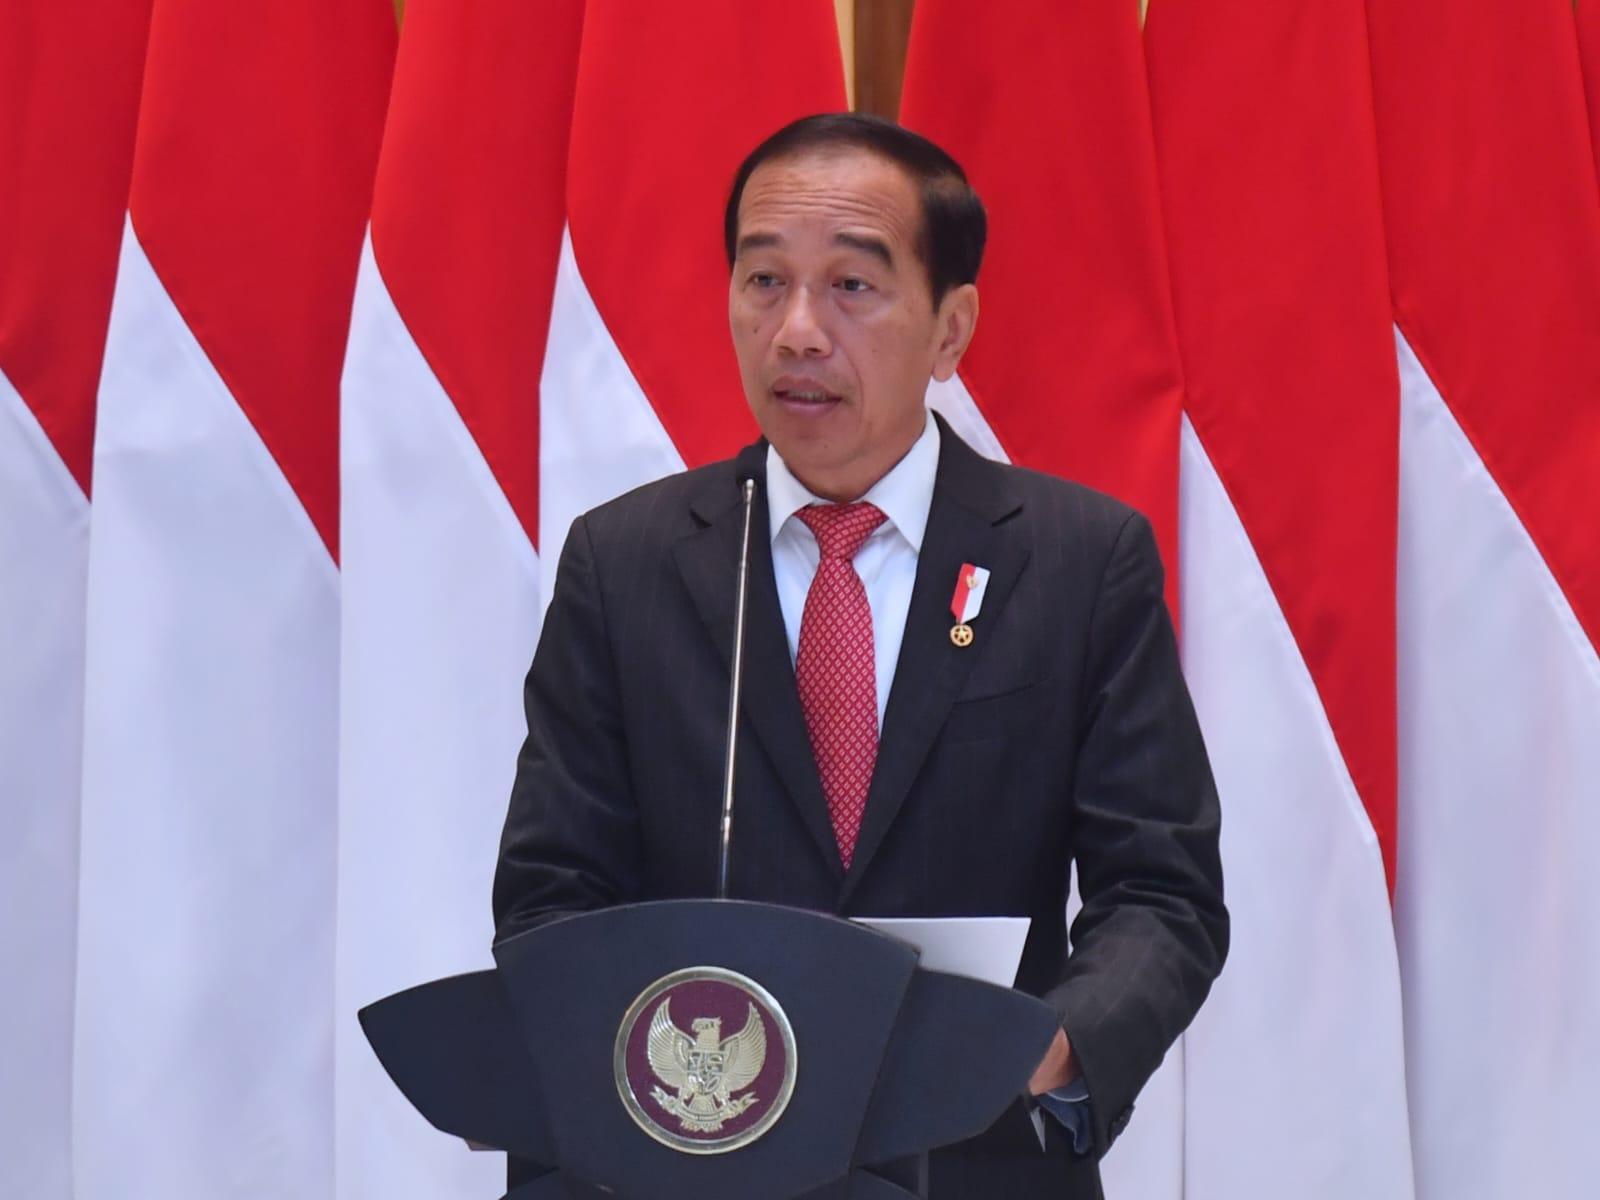 91 Negara Terlibat Konflik, Jokowi: Dunia Sedang Tak Baik-baik Saja